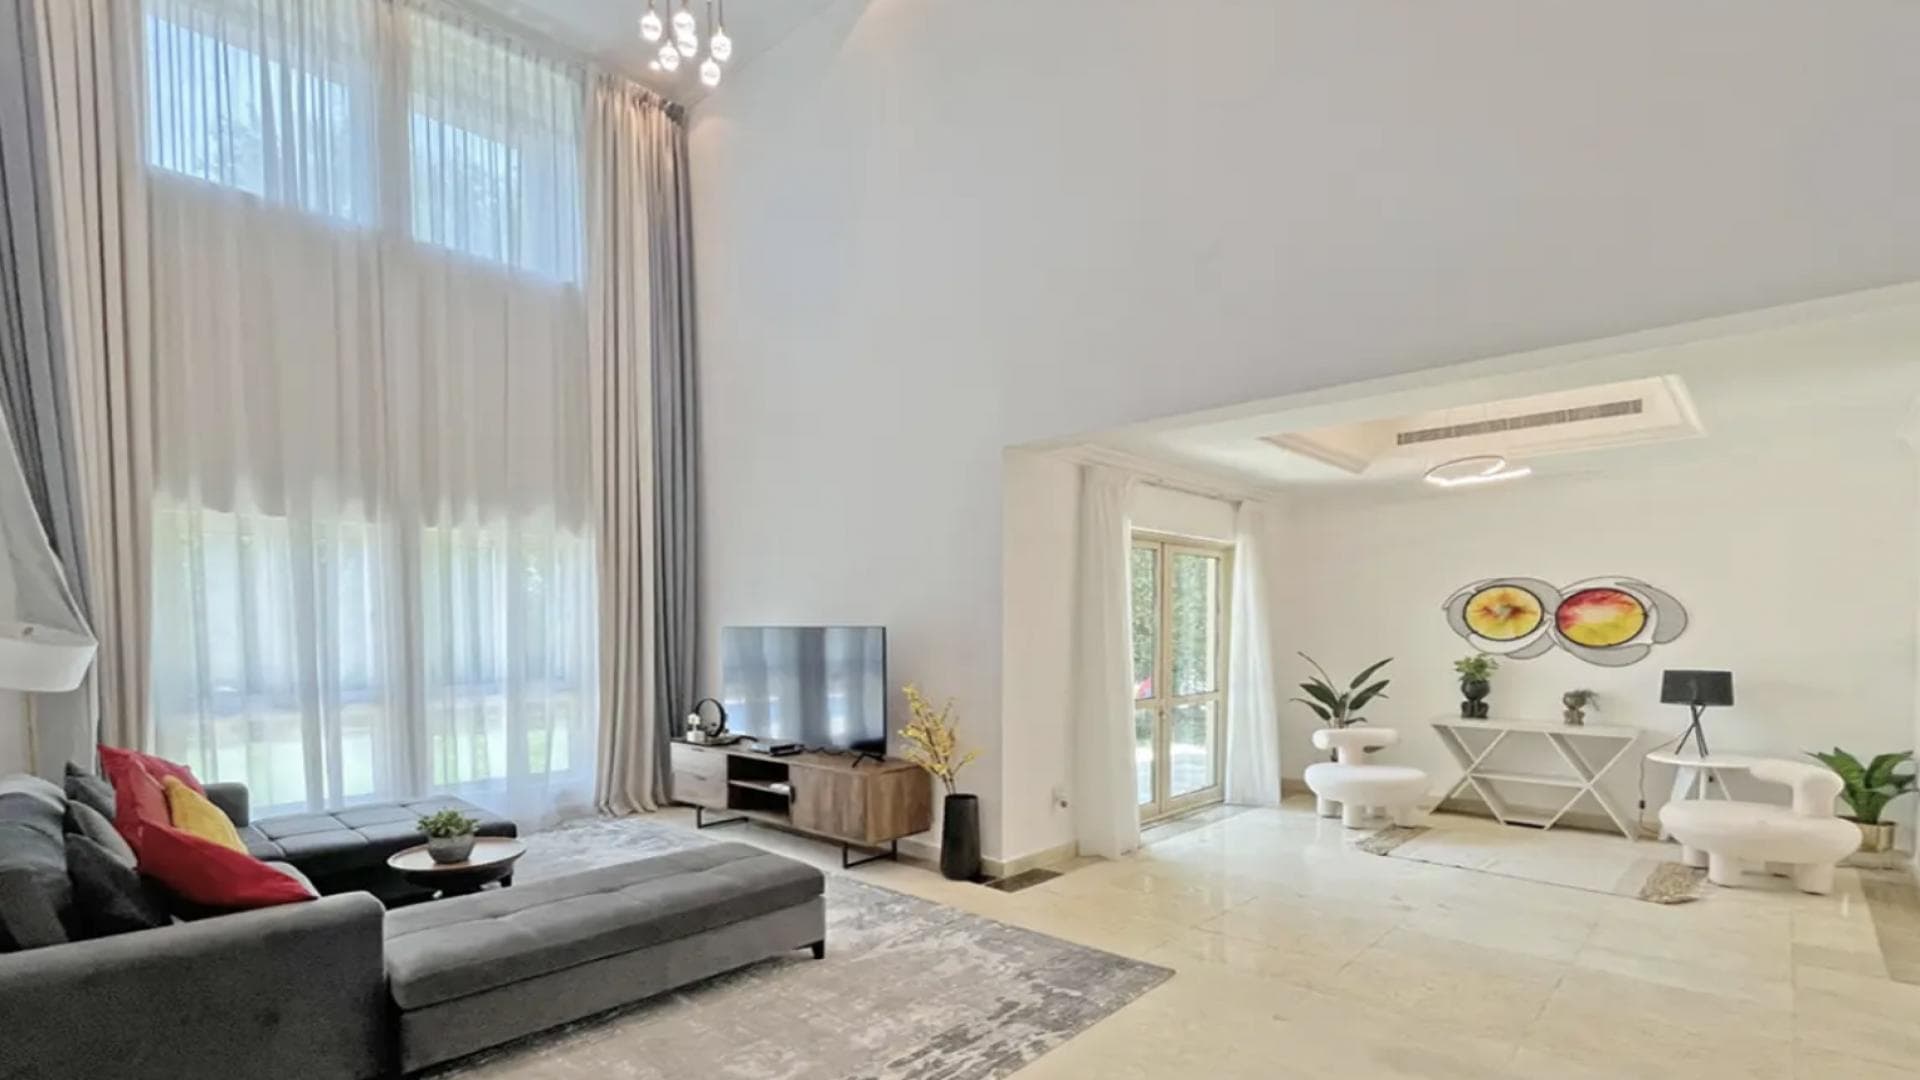 4 Bedroom Villa For Rent Al Thamam 13 Lp37961 12122b8b178e7f00.png